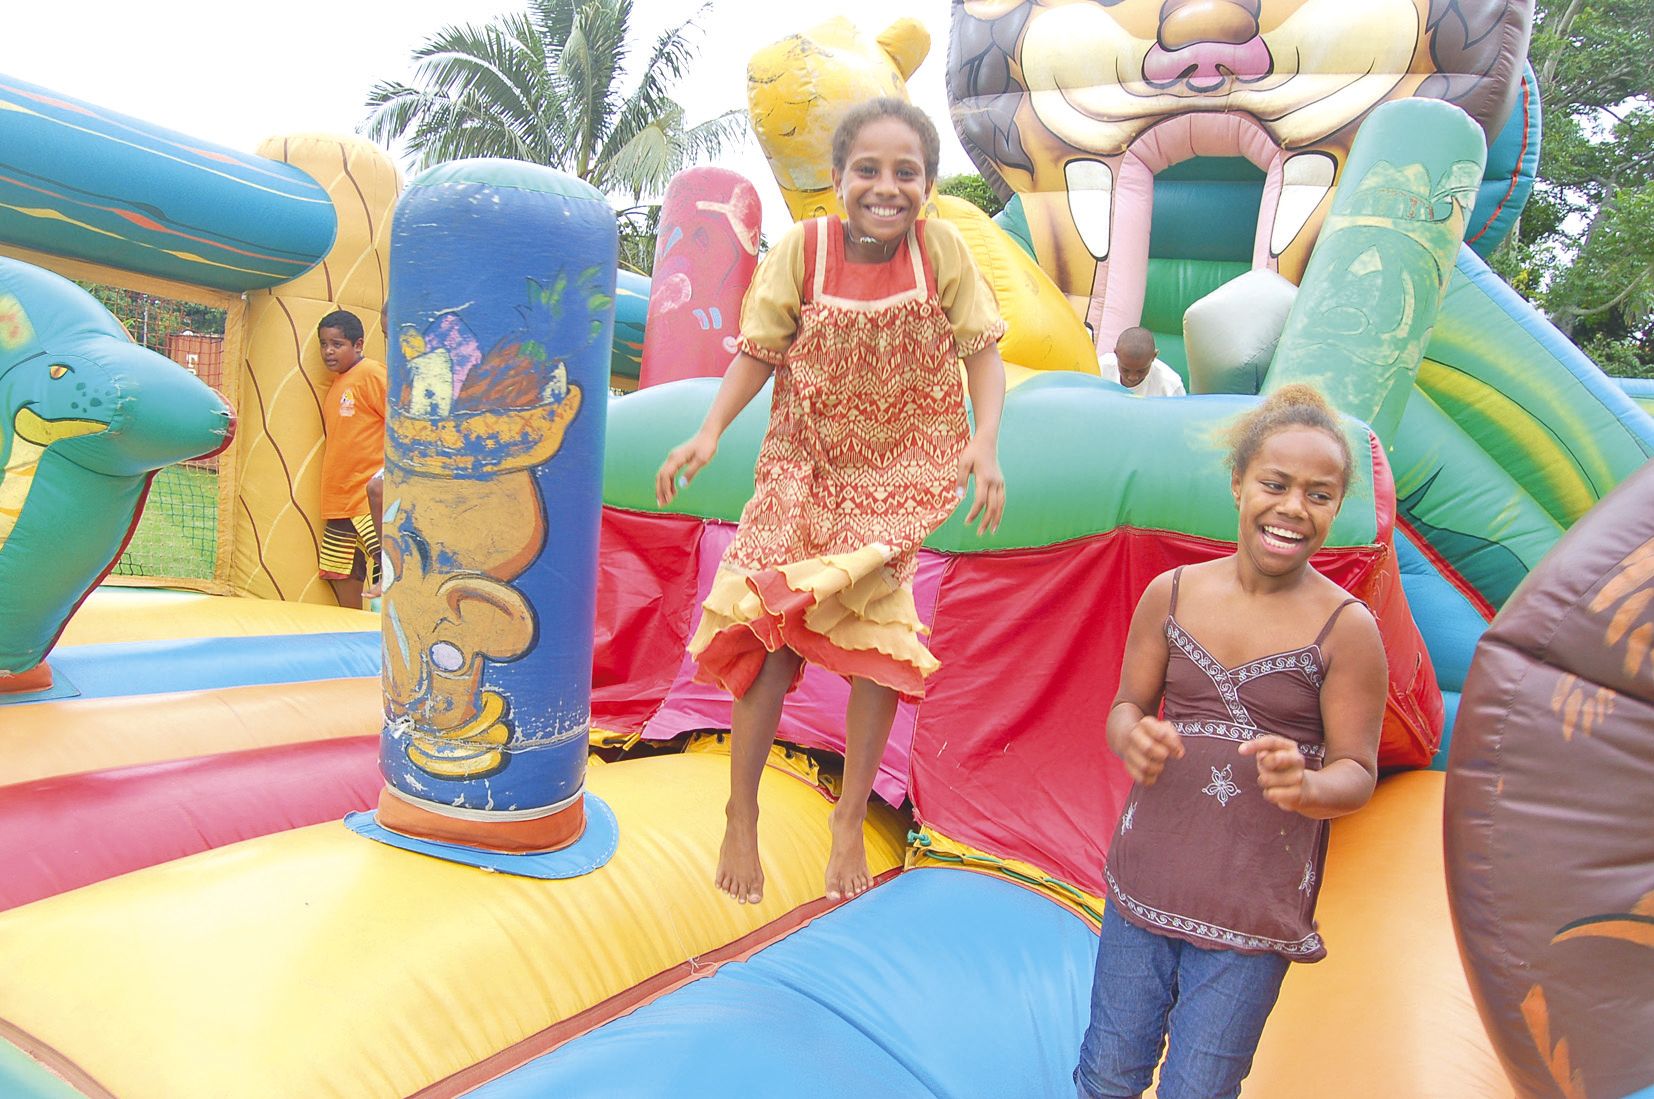 La population de Houaïlou compte une grande proportion de jeunes. La fête communale a pensé à eux avec des jeux organisés pour les enfants et deux structures gonflables sur le terrain Samoa en face de la mairie.